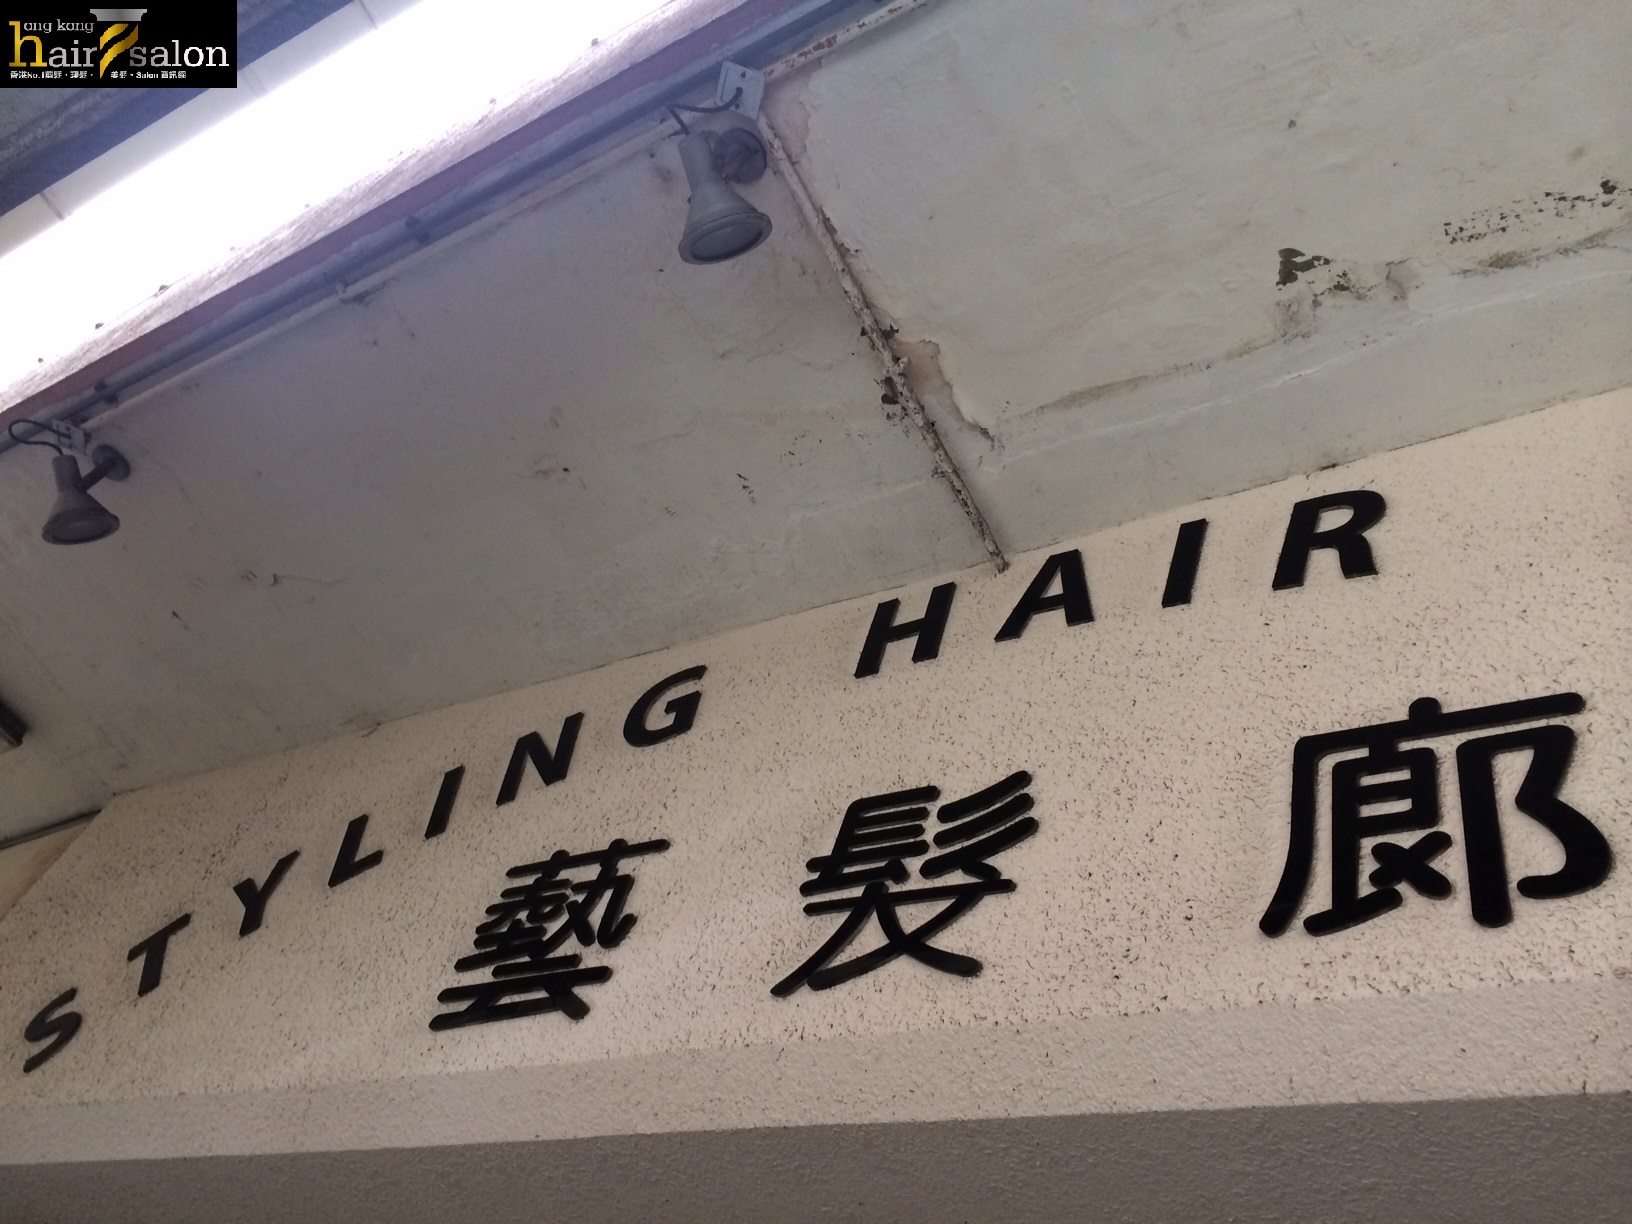 髮型屋: 藝髮廊 Styling Hair Salon